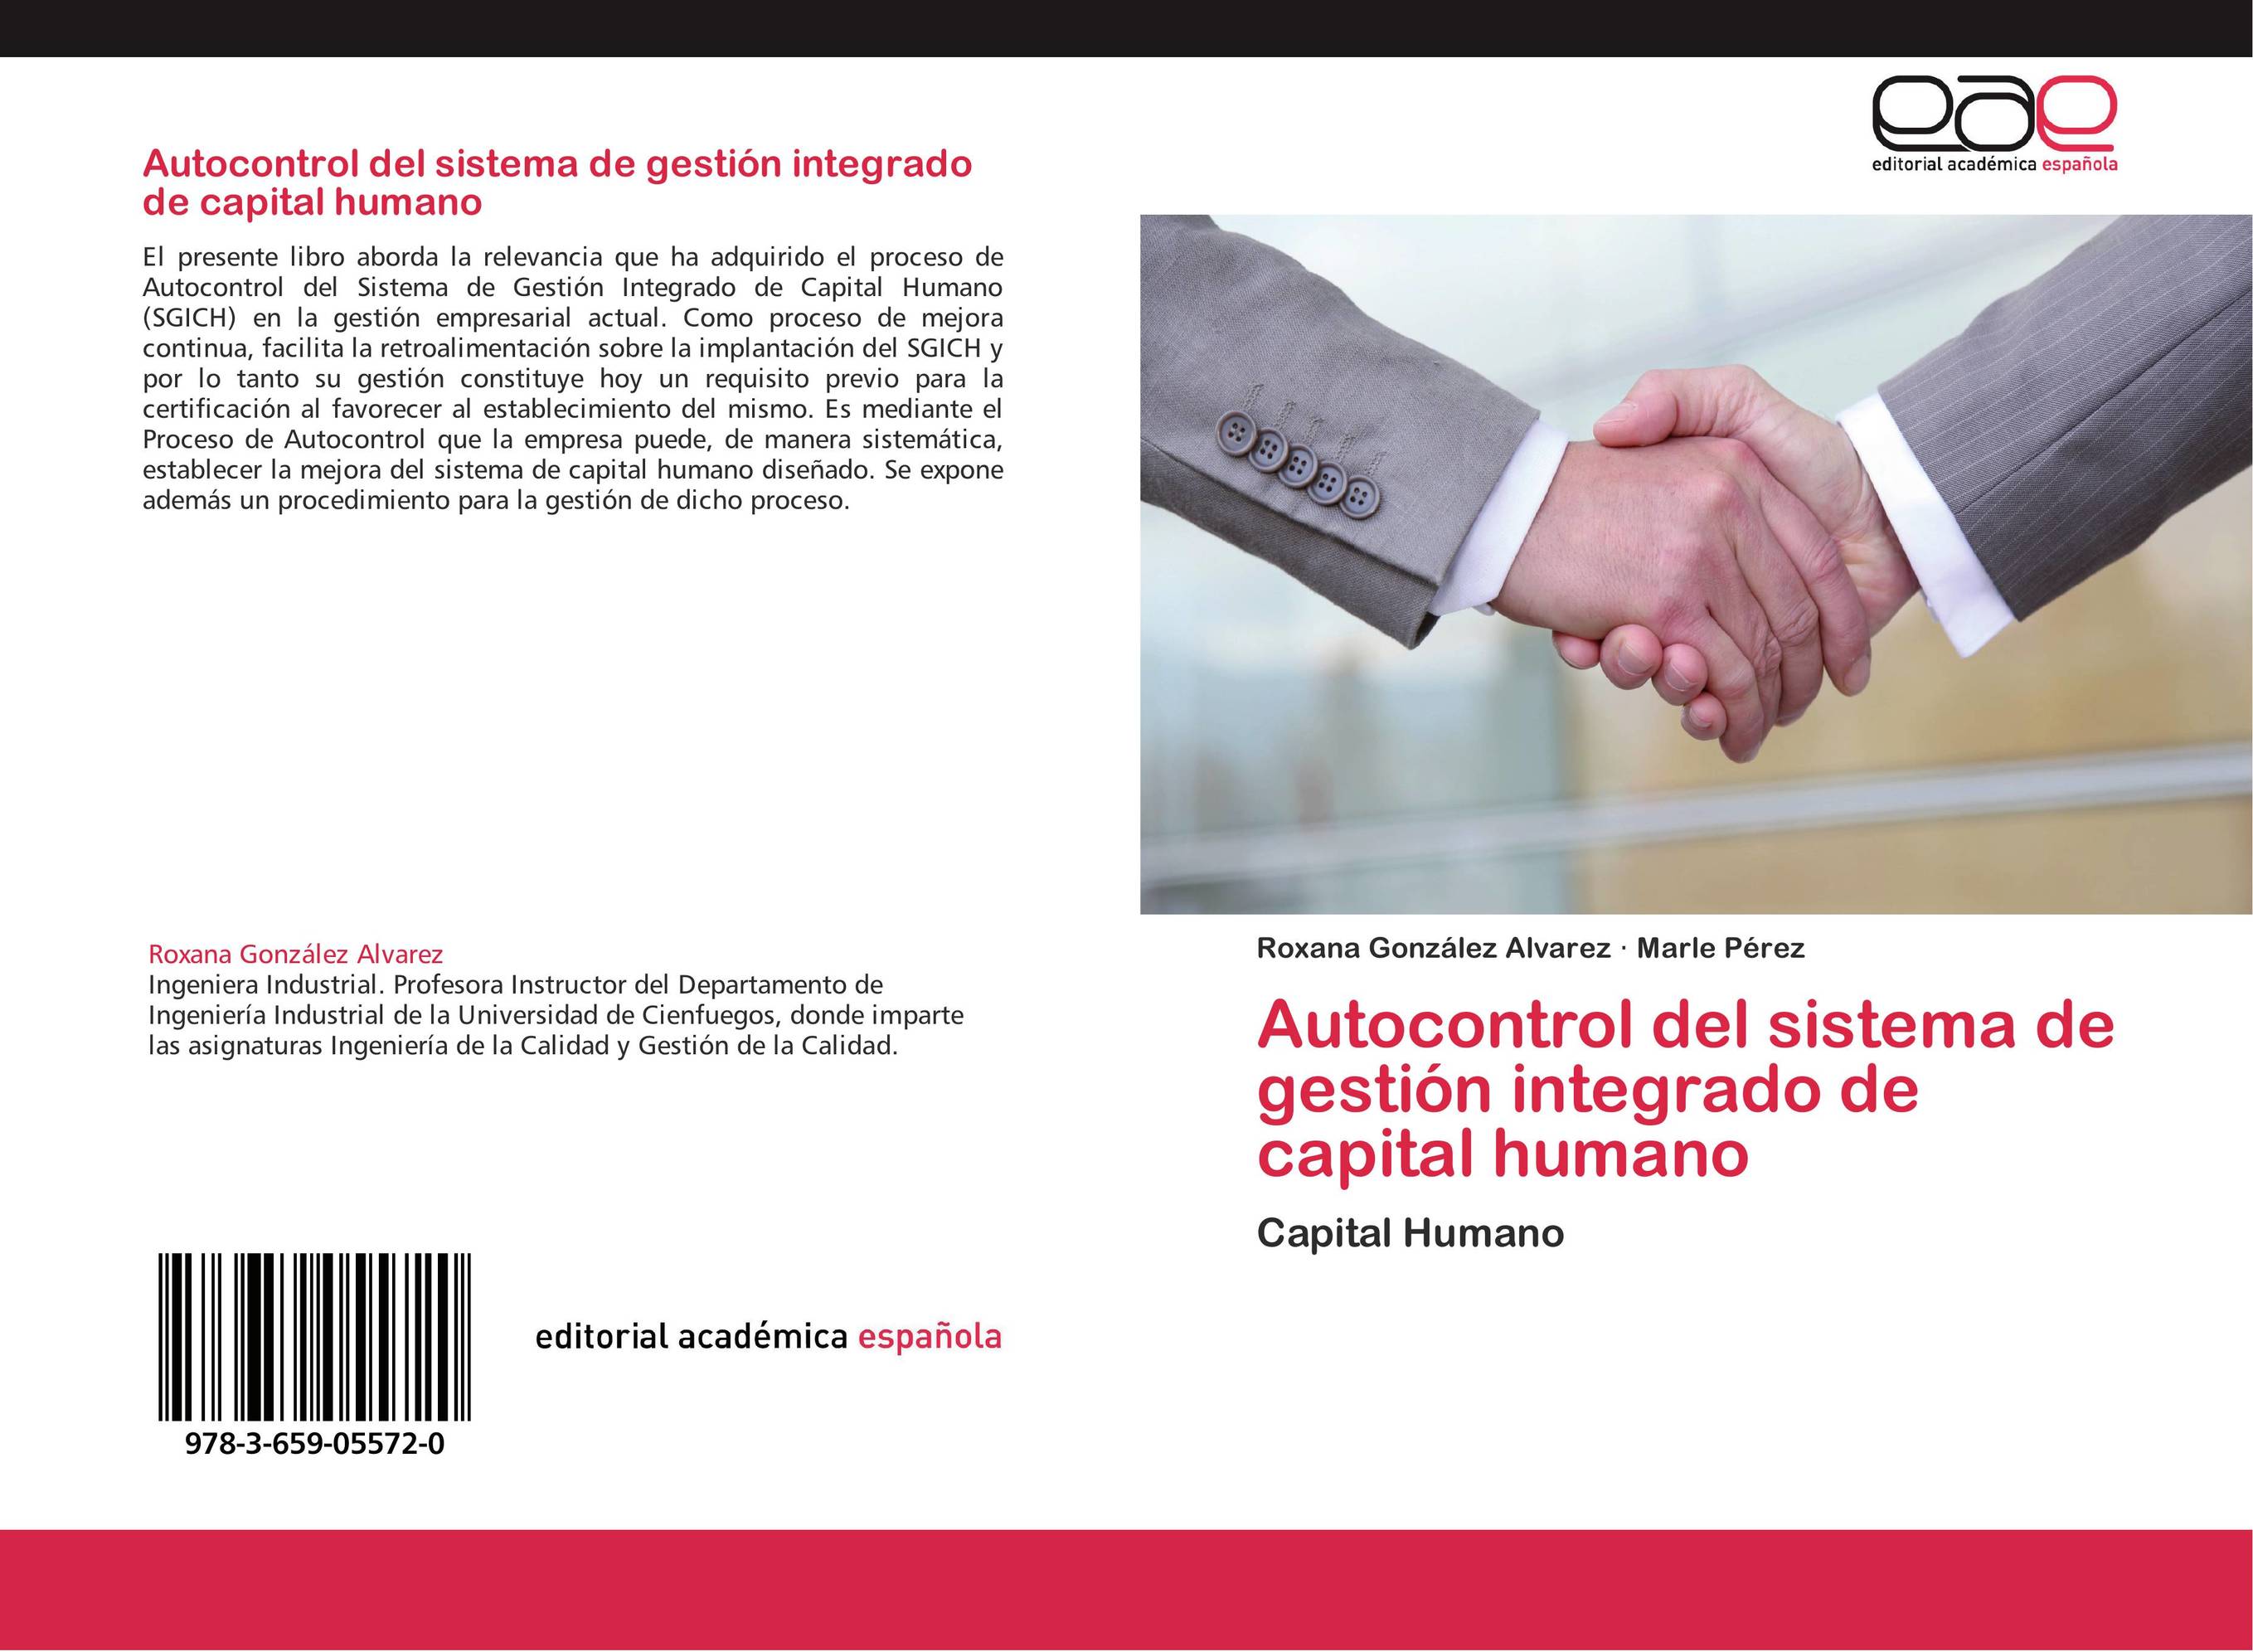 Autocontrol del sistema de gestión integrado de capital humano